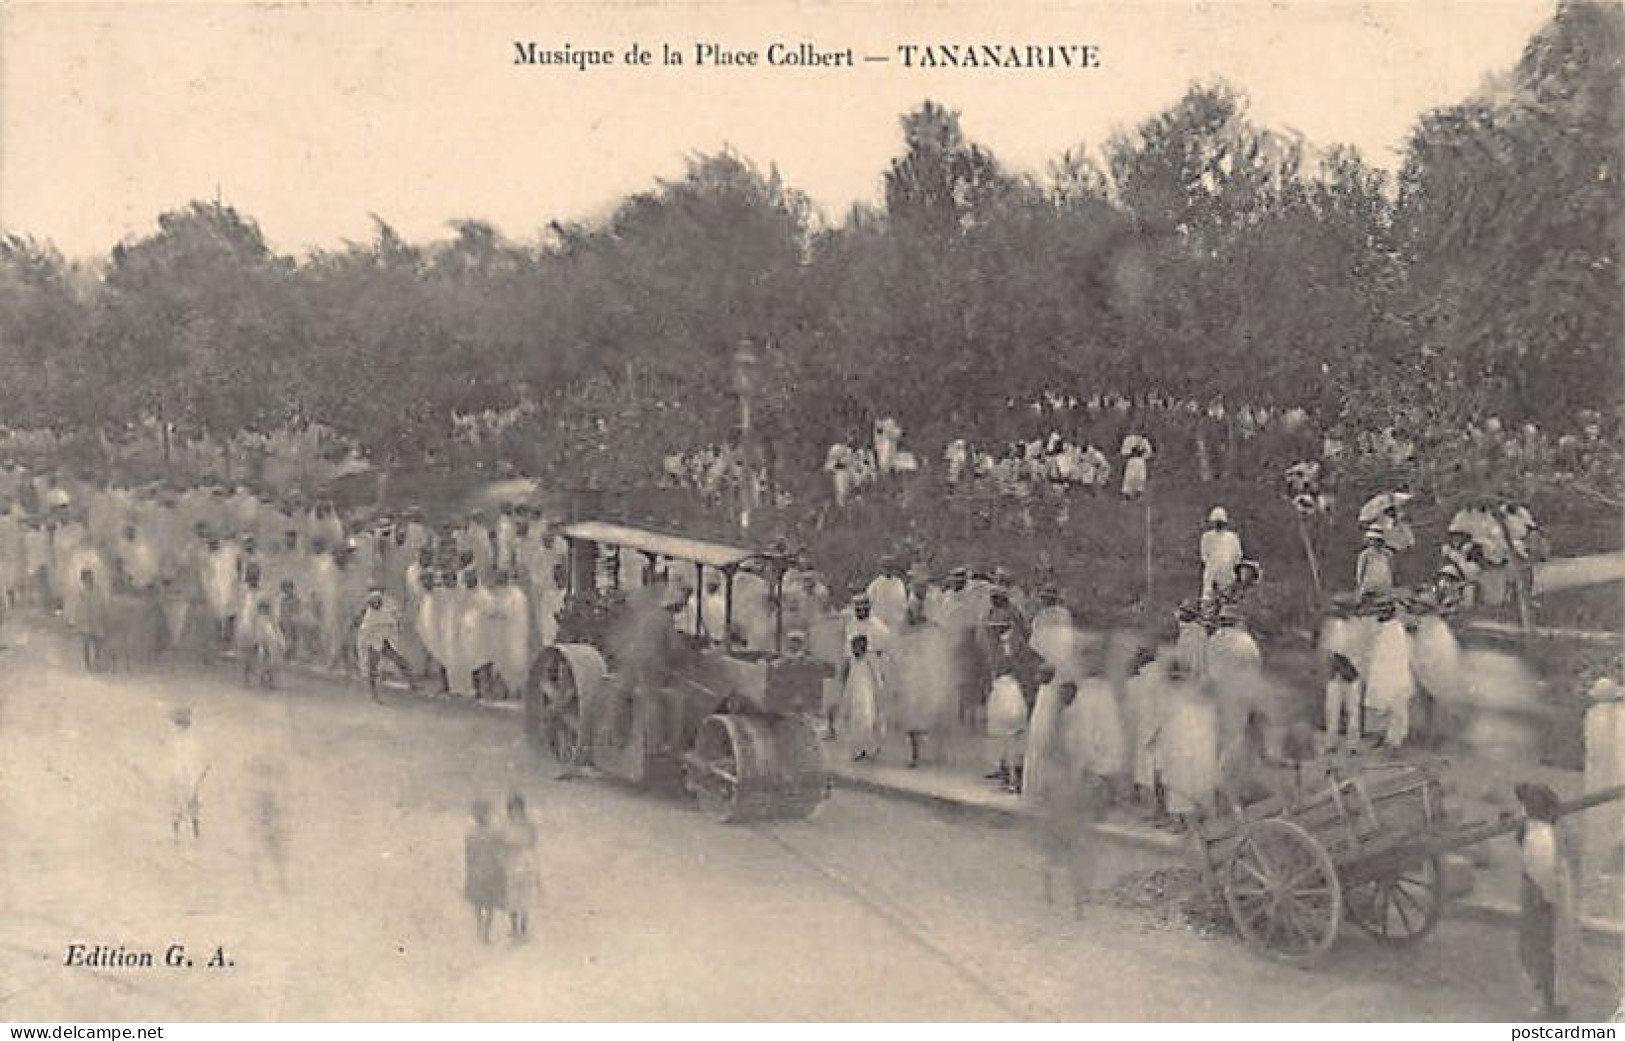 Madagascar - TANANARIVE - Musique De La Place Colbert - Rouleau-compresseur - Ed. G.A. - Madagascar